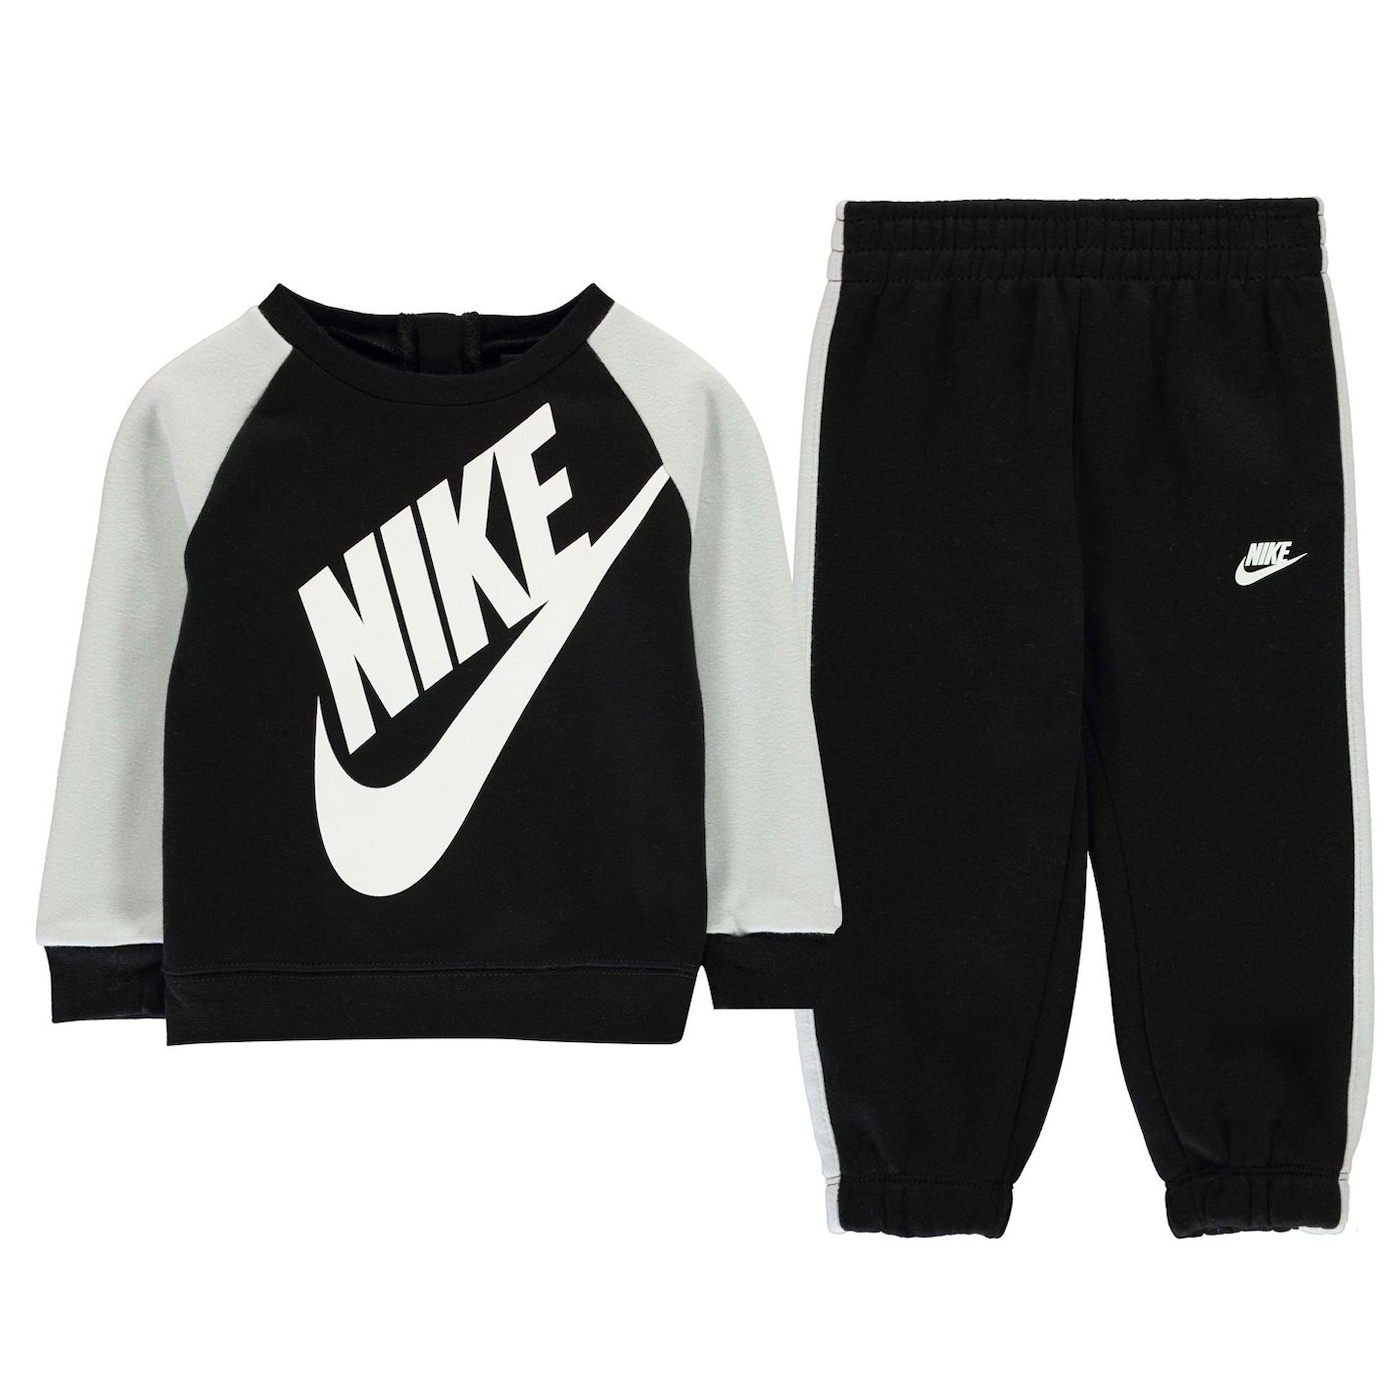 Деца  Облекло за момчета  Комплекти за момчета Nike Futura Crew Set Baby Boys 1337002-7356331